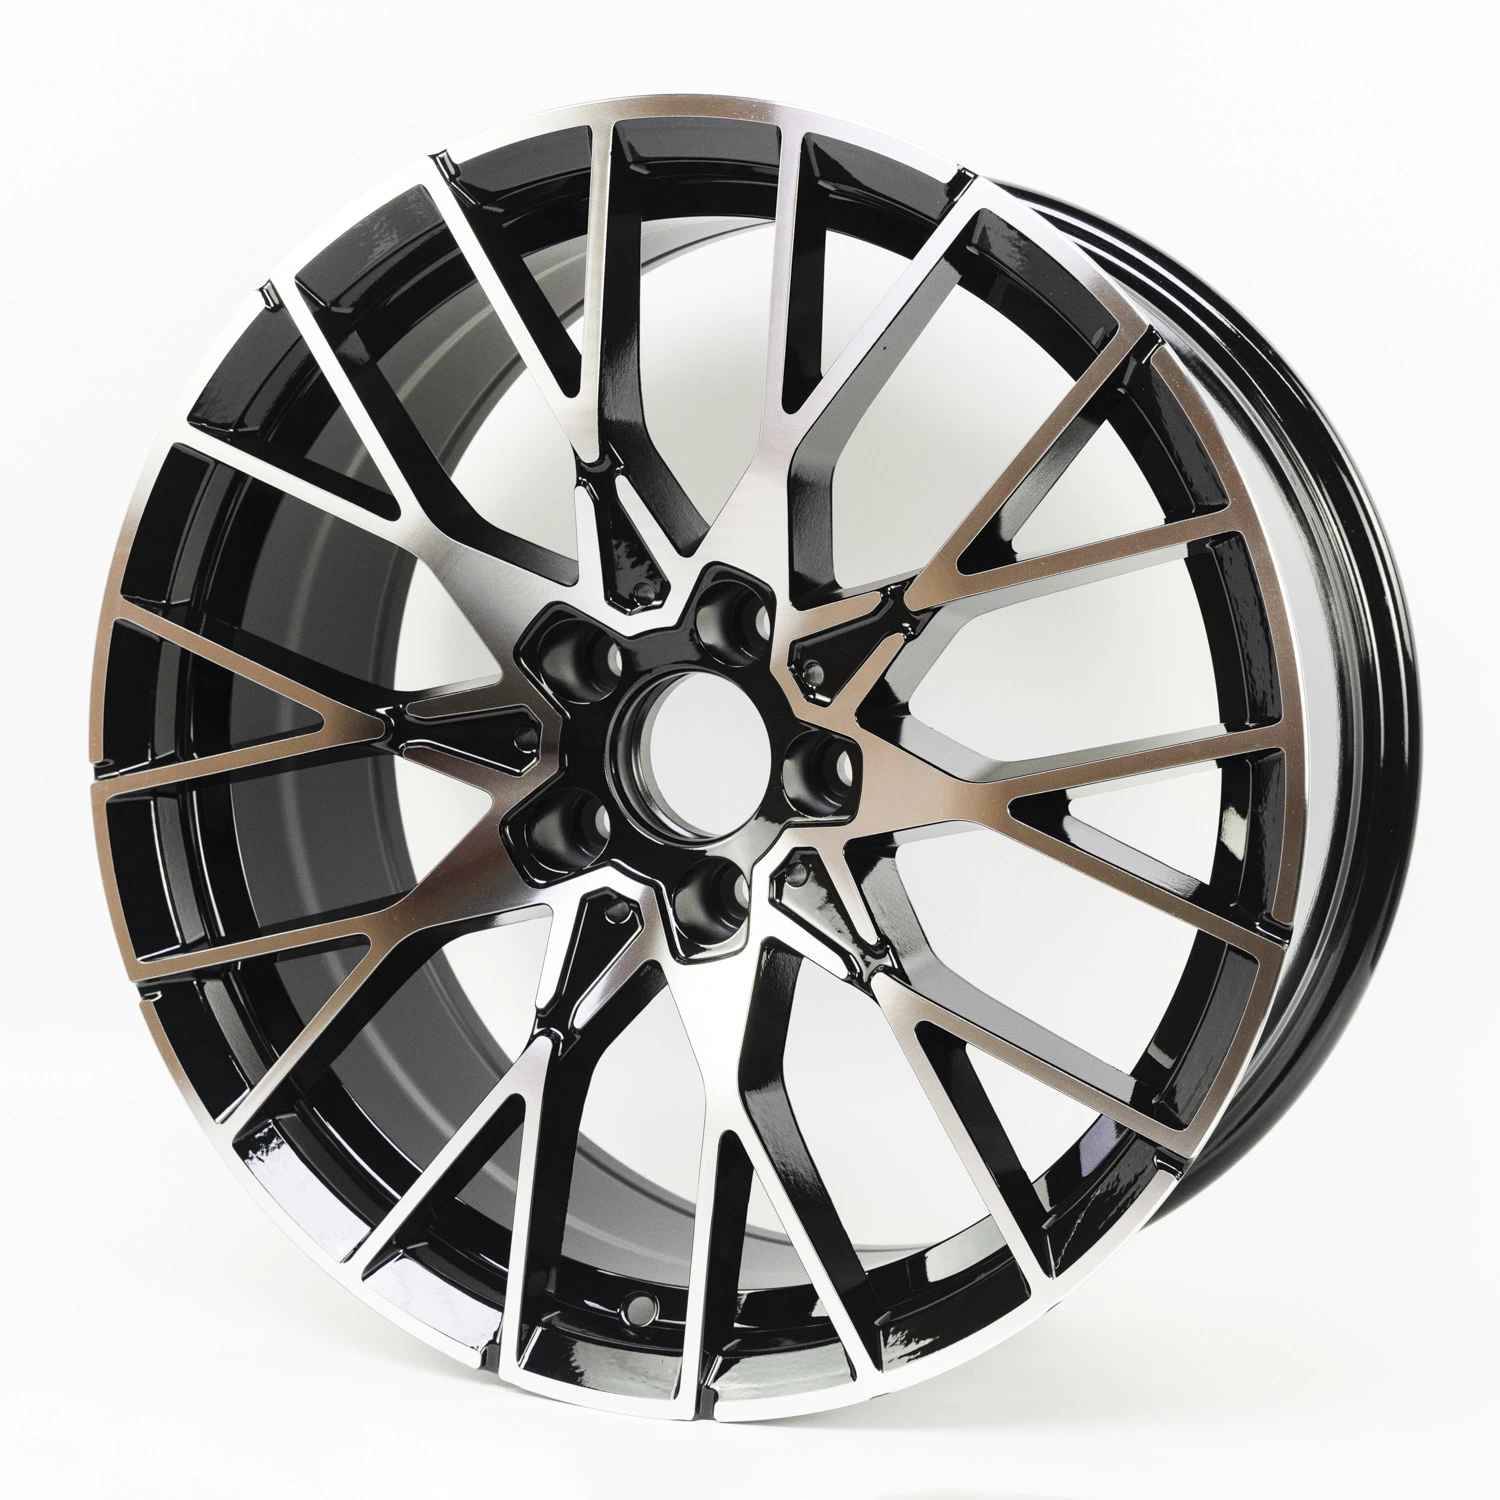 Горячая продажа оптовой реплики колеса для Toyota аксессуары для автомобиля для легкосплавных колесных спорта 18 дюйма